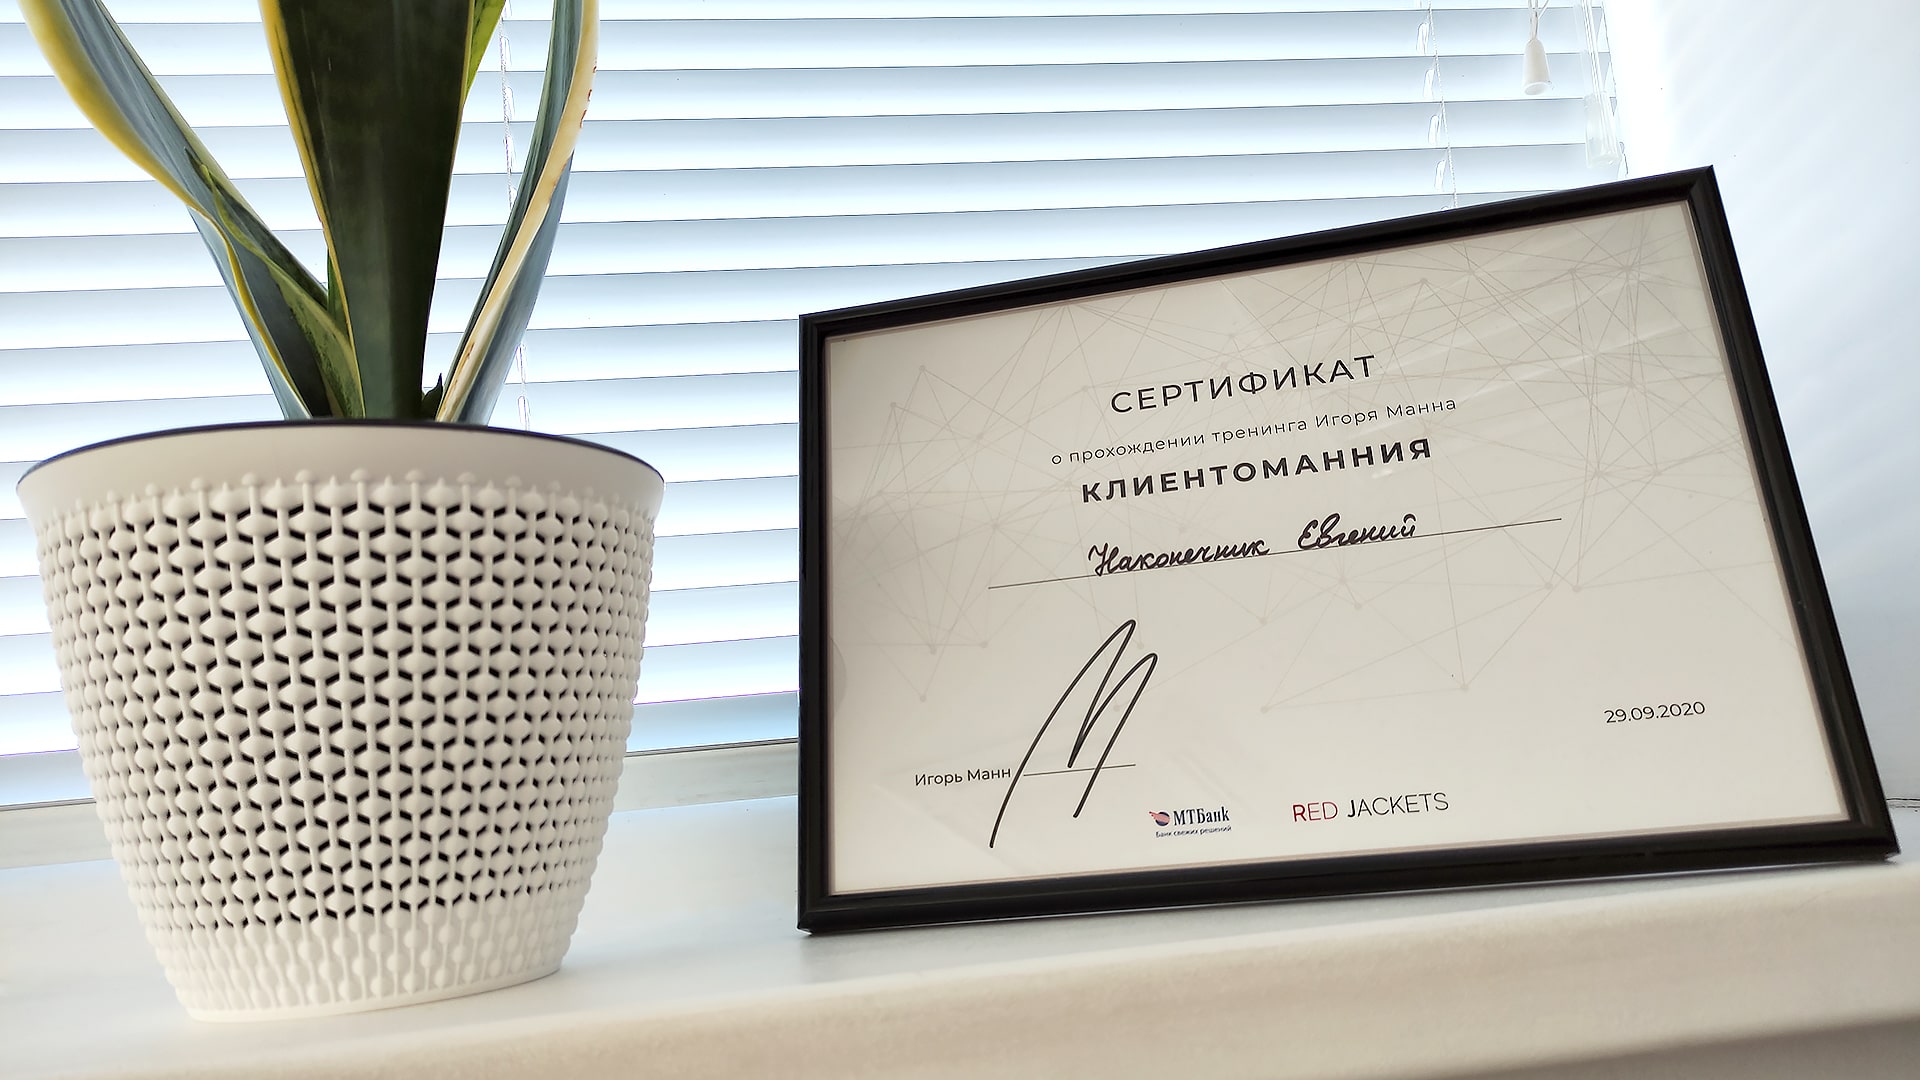 Сертификат бизнес-тренинга Игоря Манна